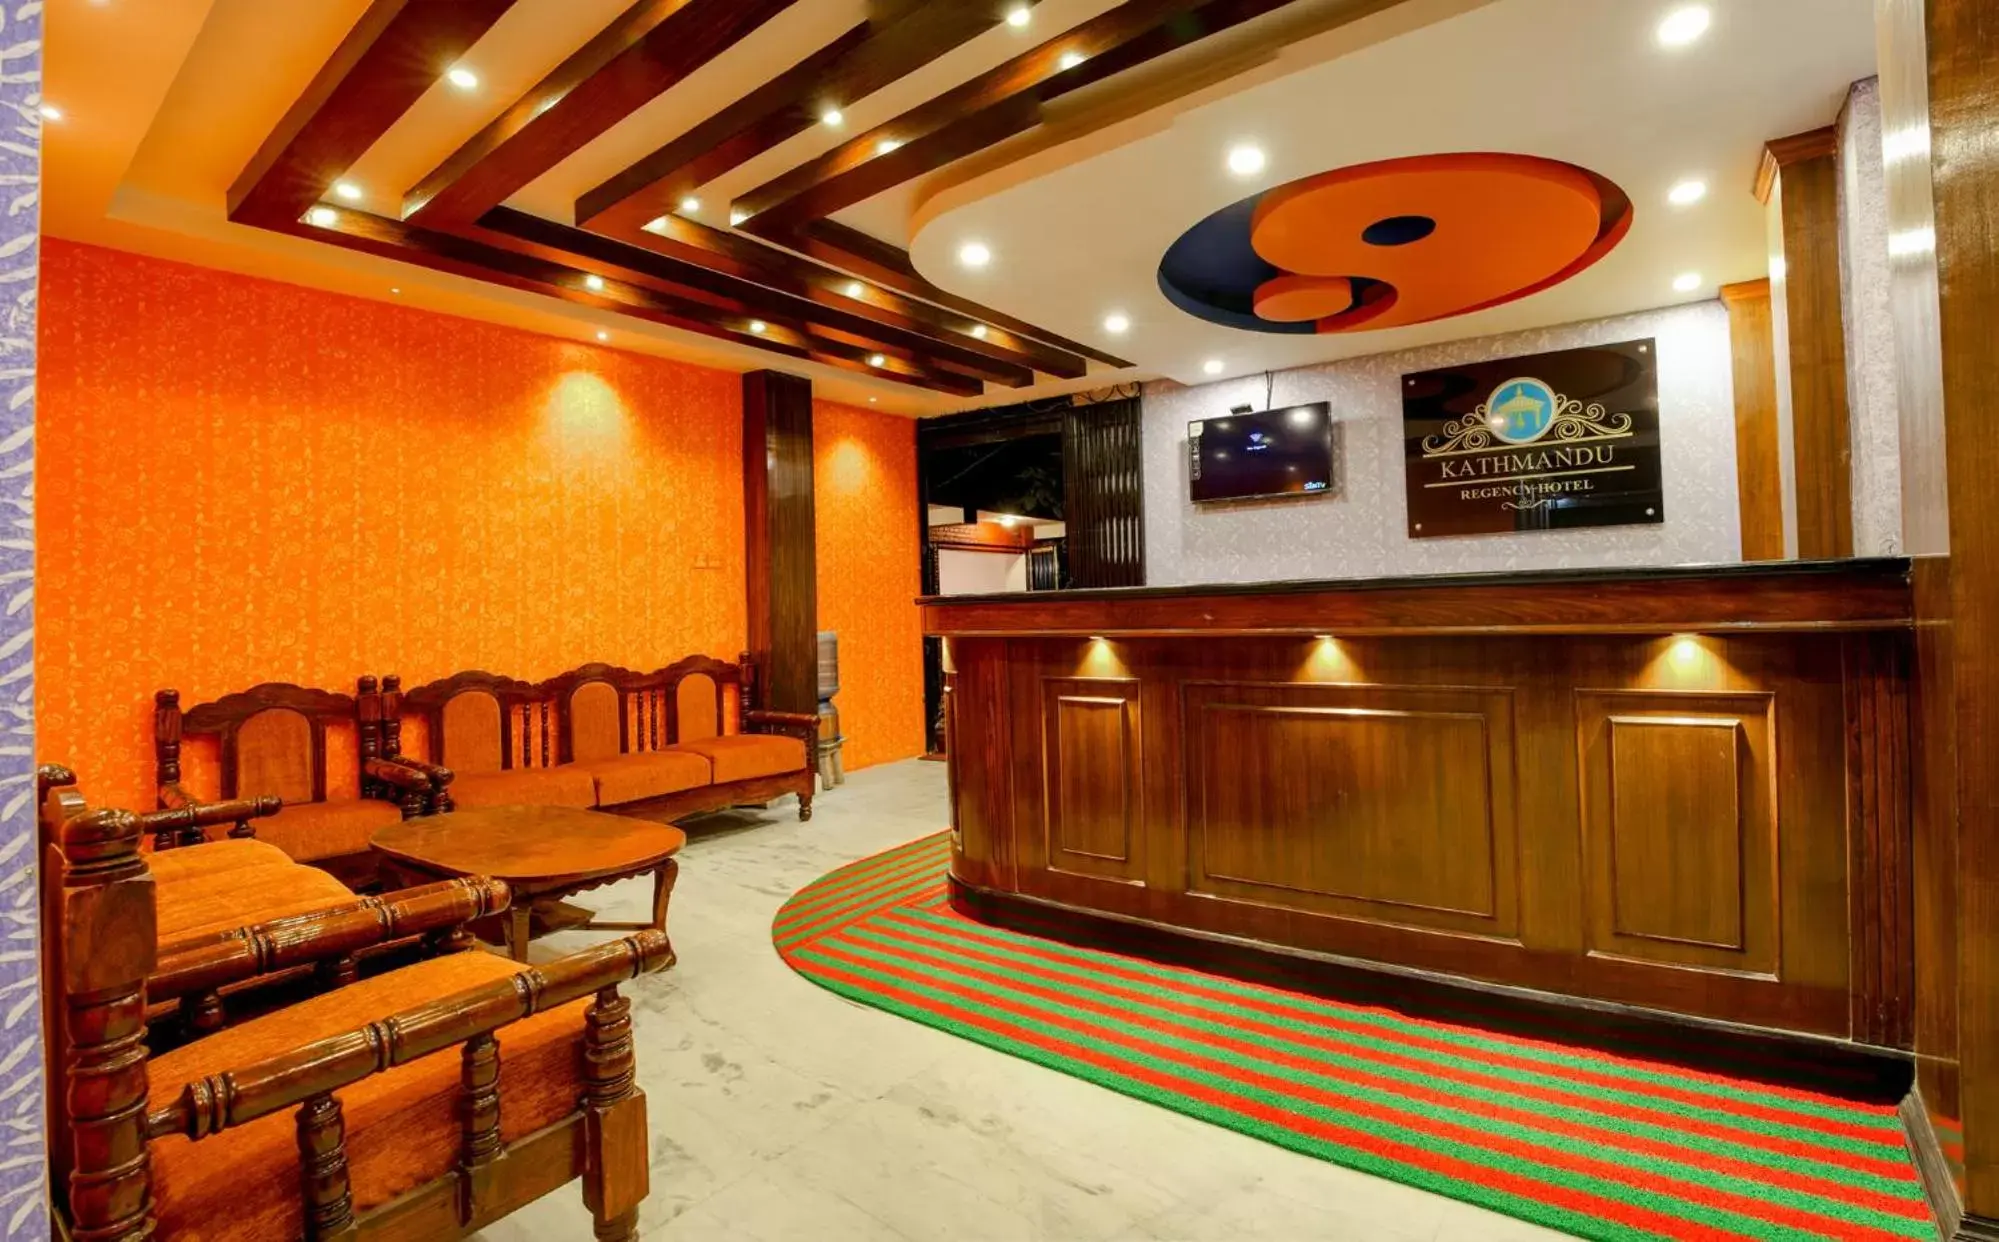 Lobby or reception in Kathmandu Regency Hotel